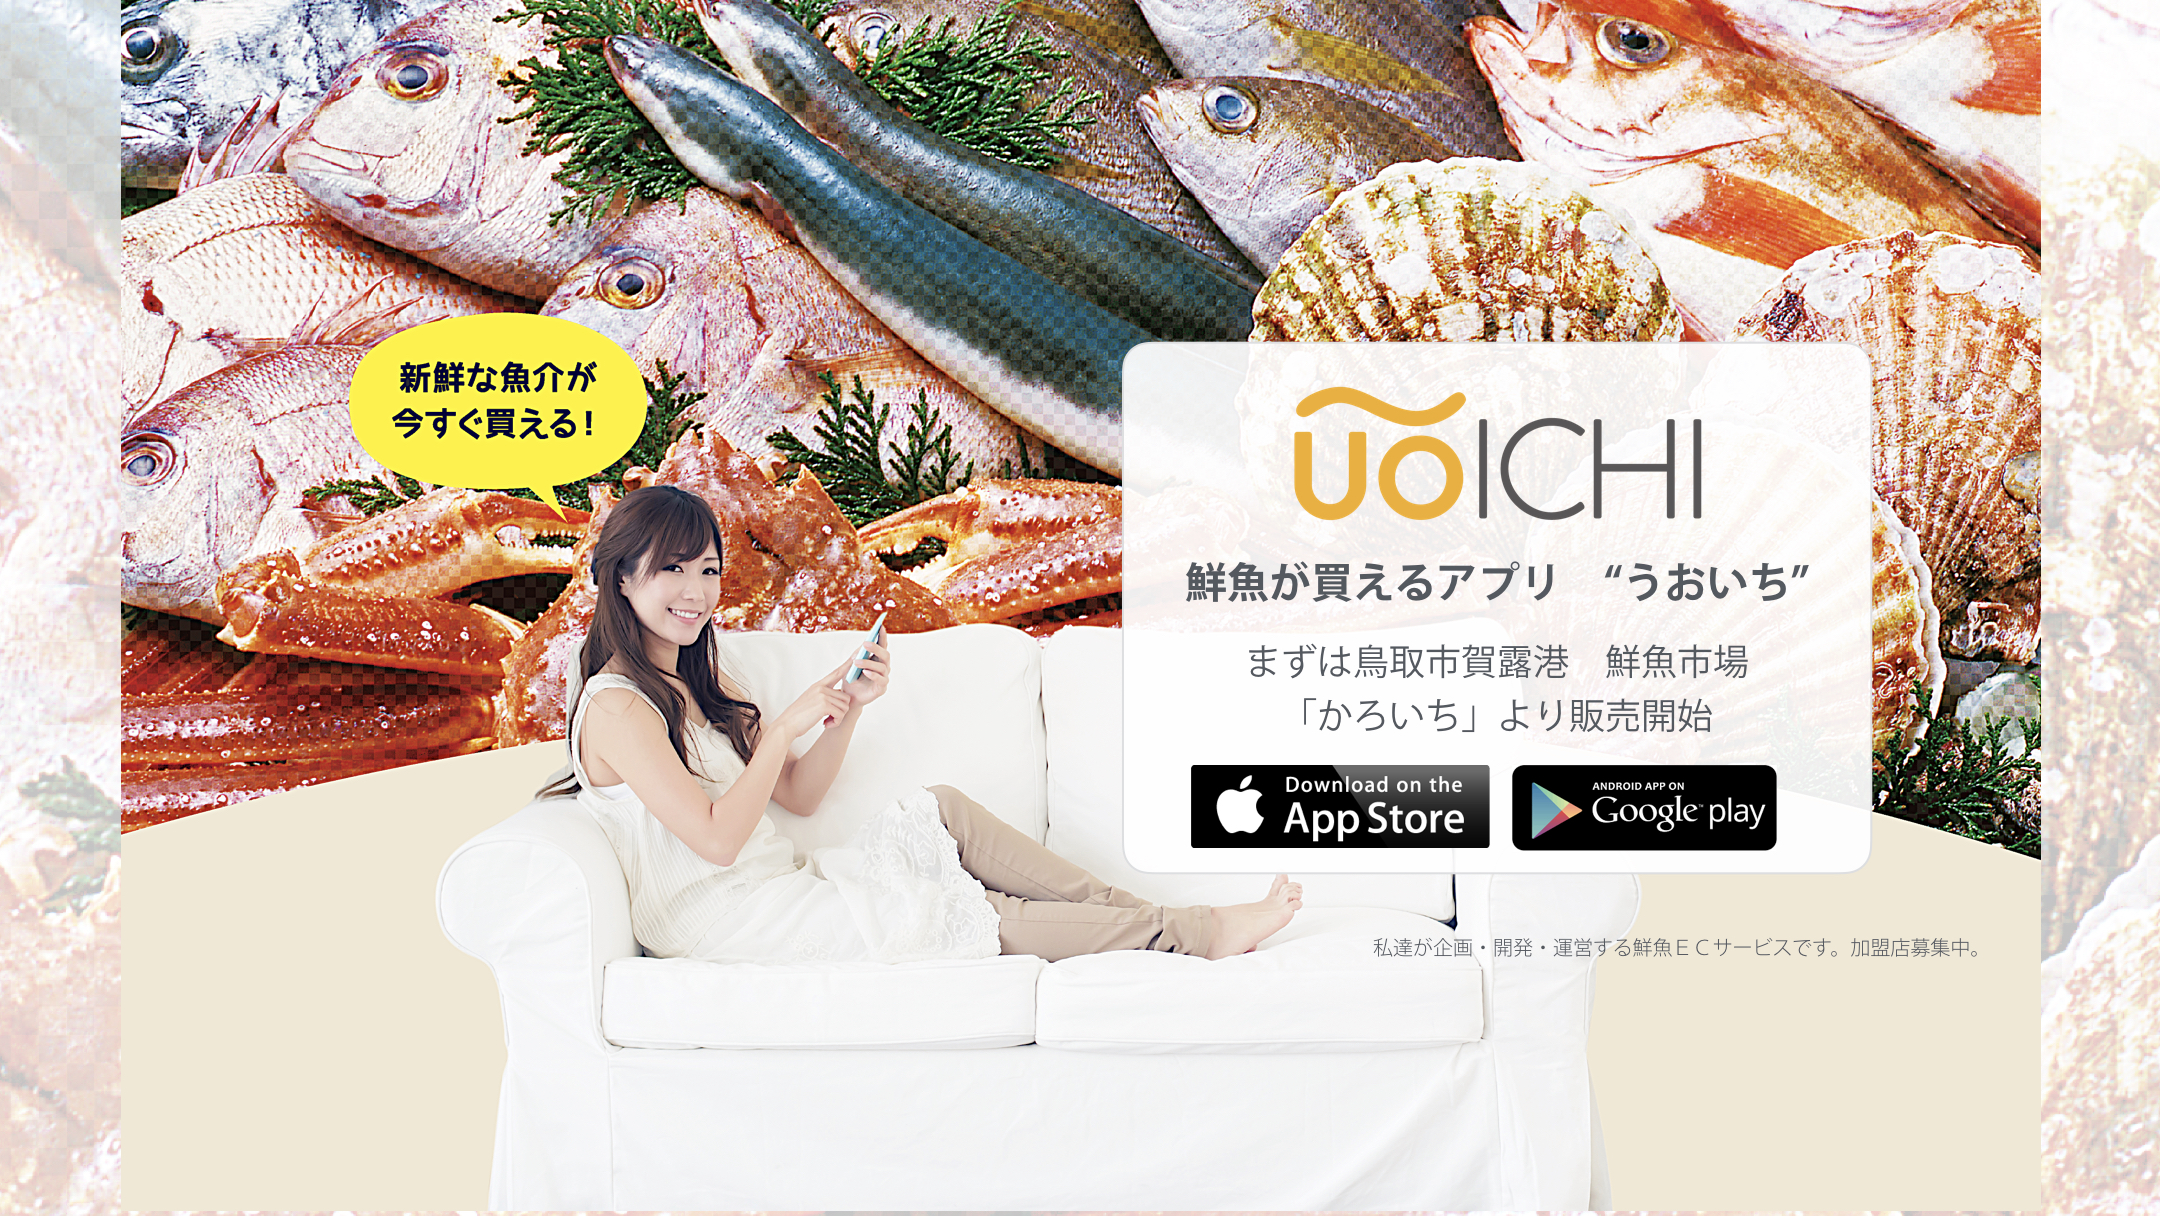 UOICHI 鮮魚が買えるアプリ ECサービス 取り寄せ tapshop